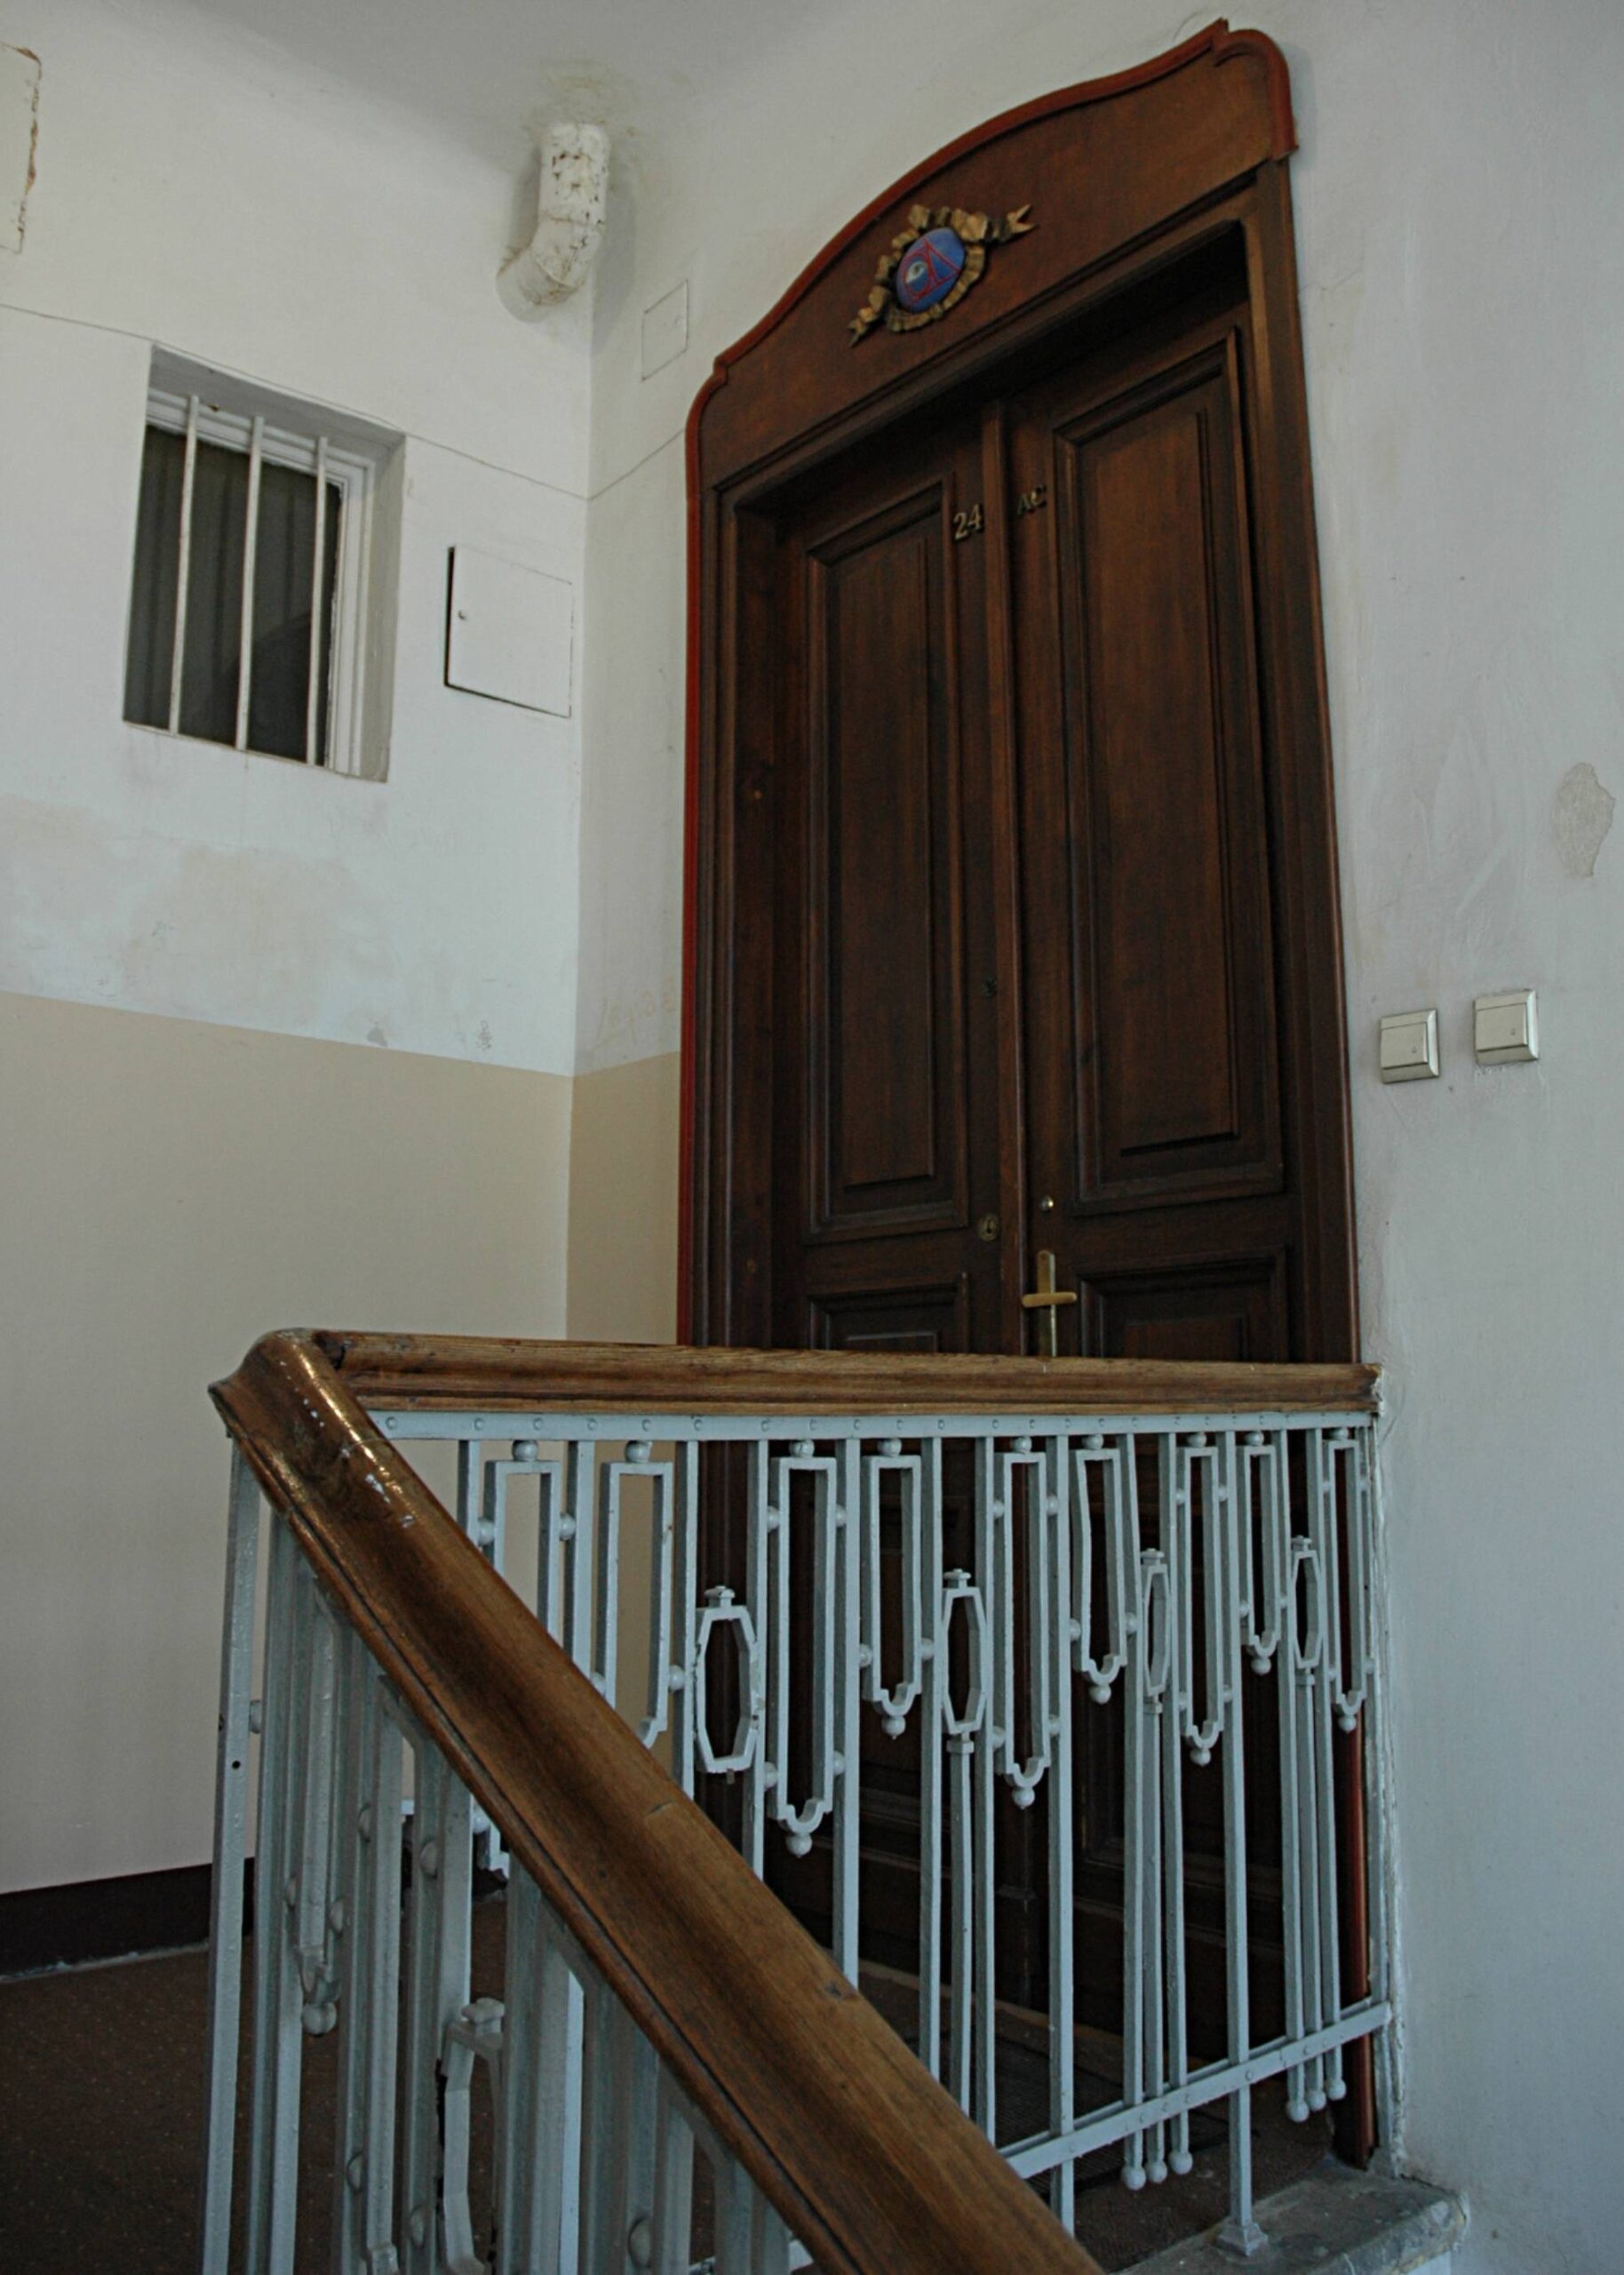 Klatka schodowa. Ostatnie piętro. Drzwi do mieszkania. Fot. Aleksandra Bocianowska 2022 r., źródło: AOD III.